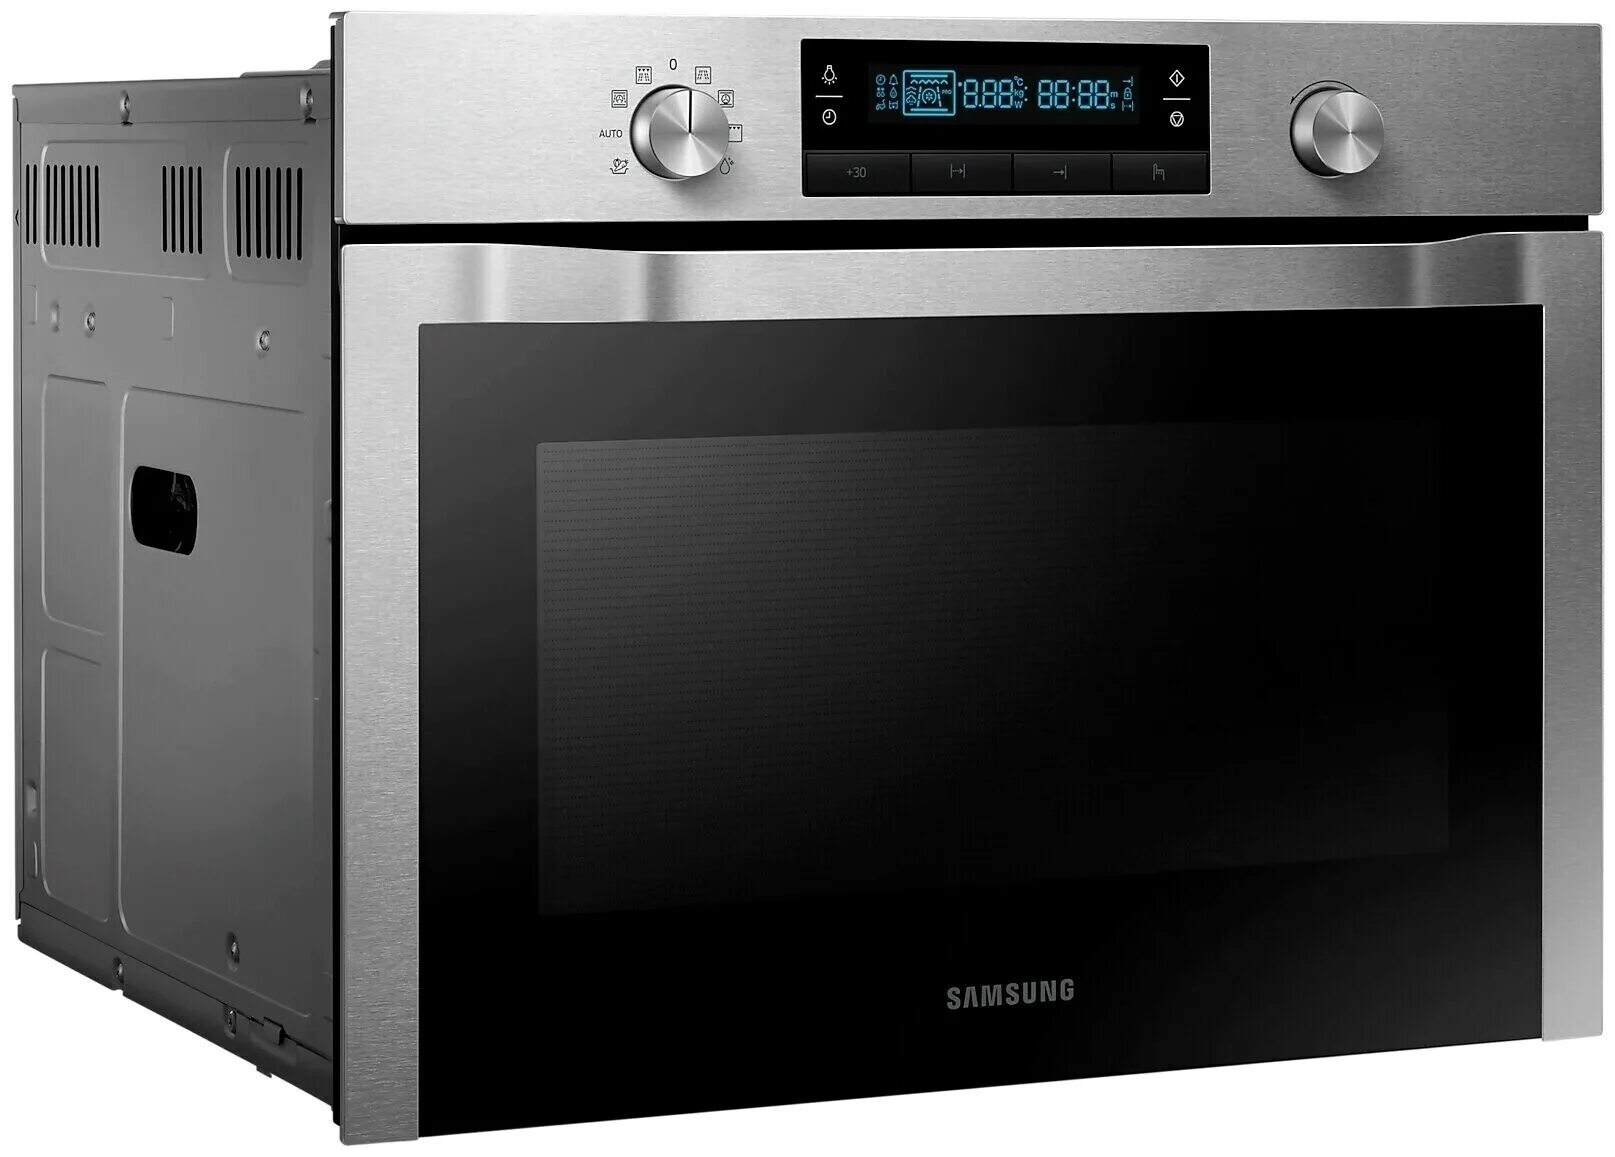 Встраиваемая духовка 50 см. Samsung nq50h5533ks. Микроволновая печь встраиваемая Samsung nq50k3130bs. Электрический духовой шкаф Samsung bts16d4g. Духовой шкаф Samsung nq50h5537kb.